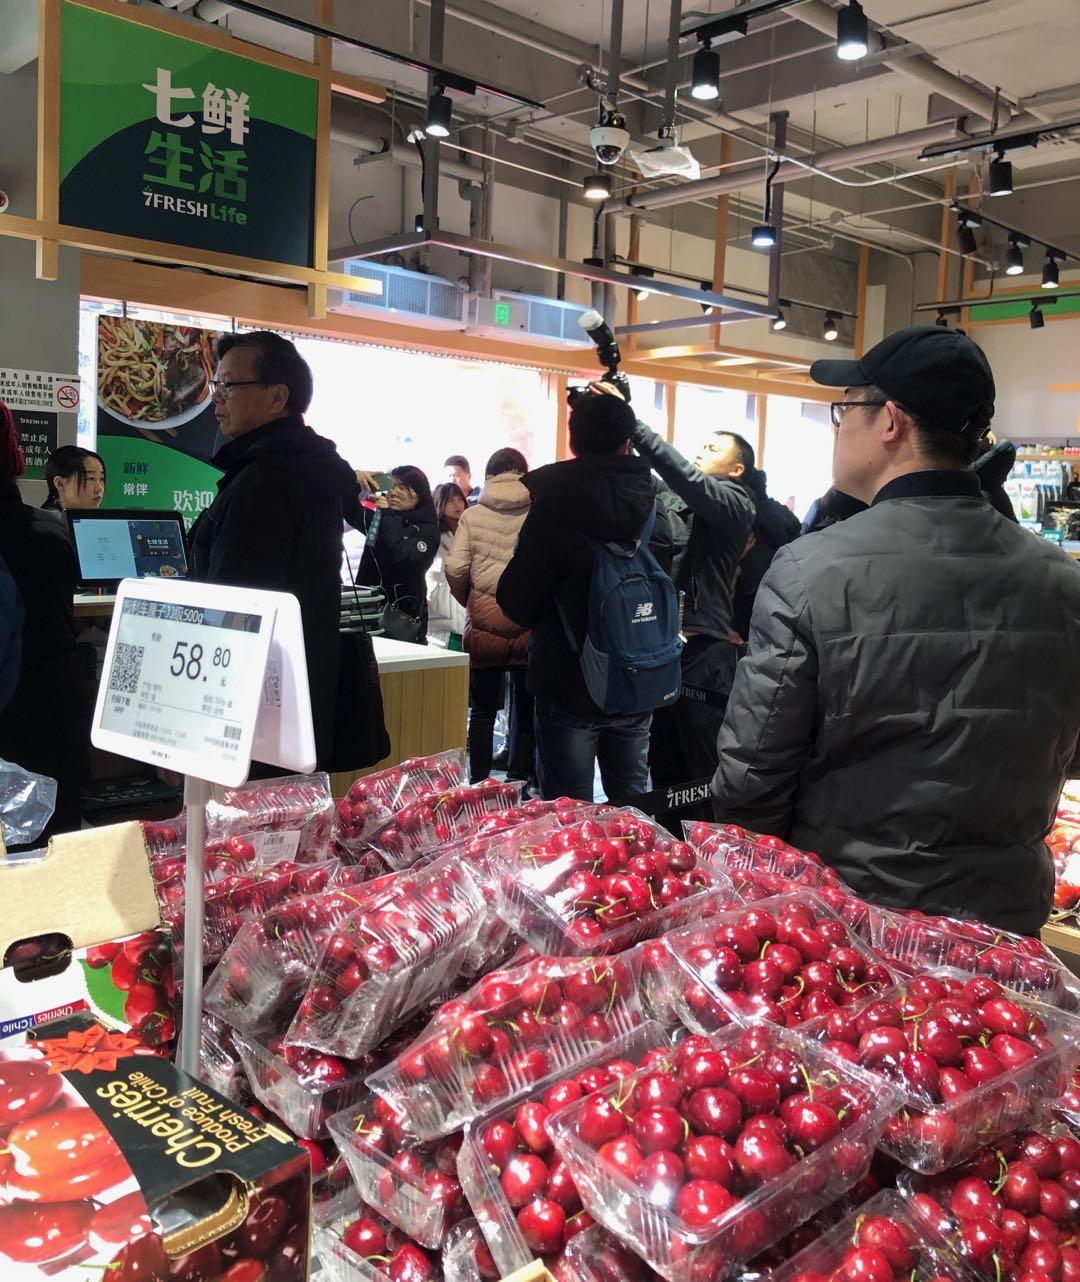 瞄准“宝妈”消费群体，京东7FRESH开了首家社区生鲜超市“七鲜生活“-第2张图片-周小辉博客